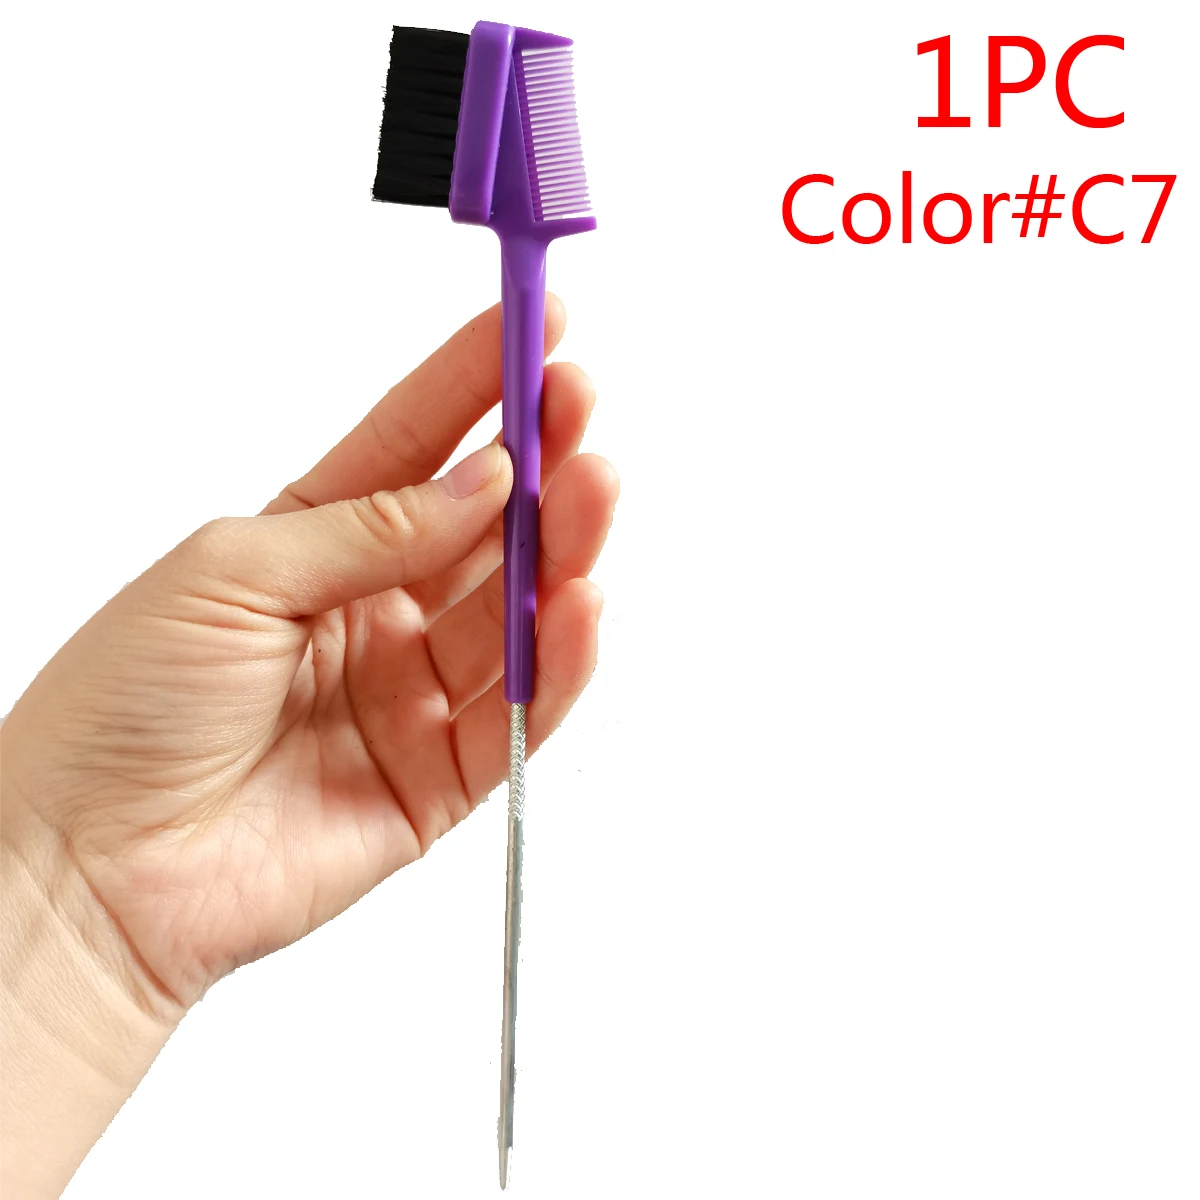 1PC ColorC7